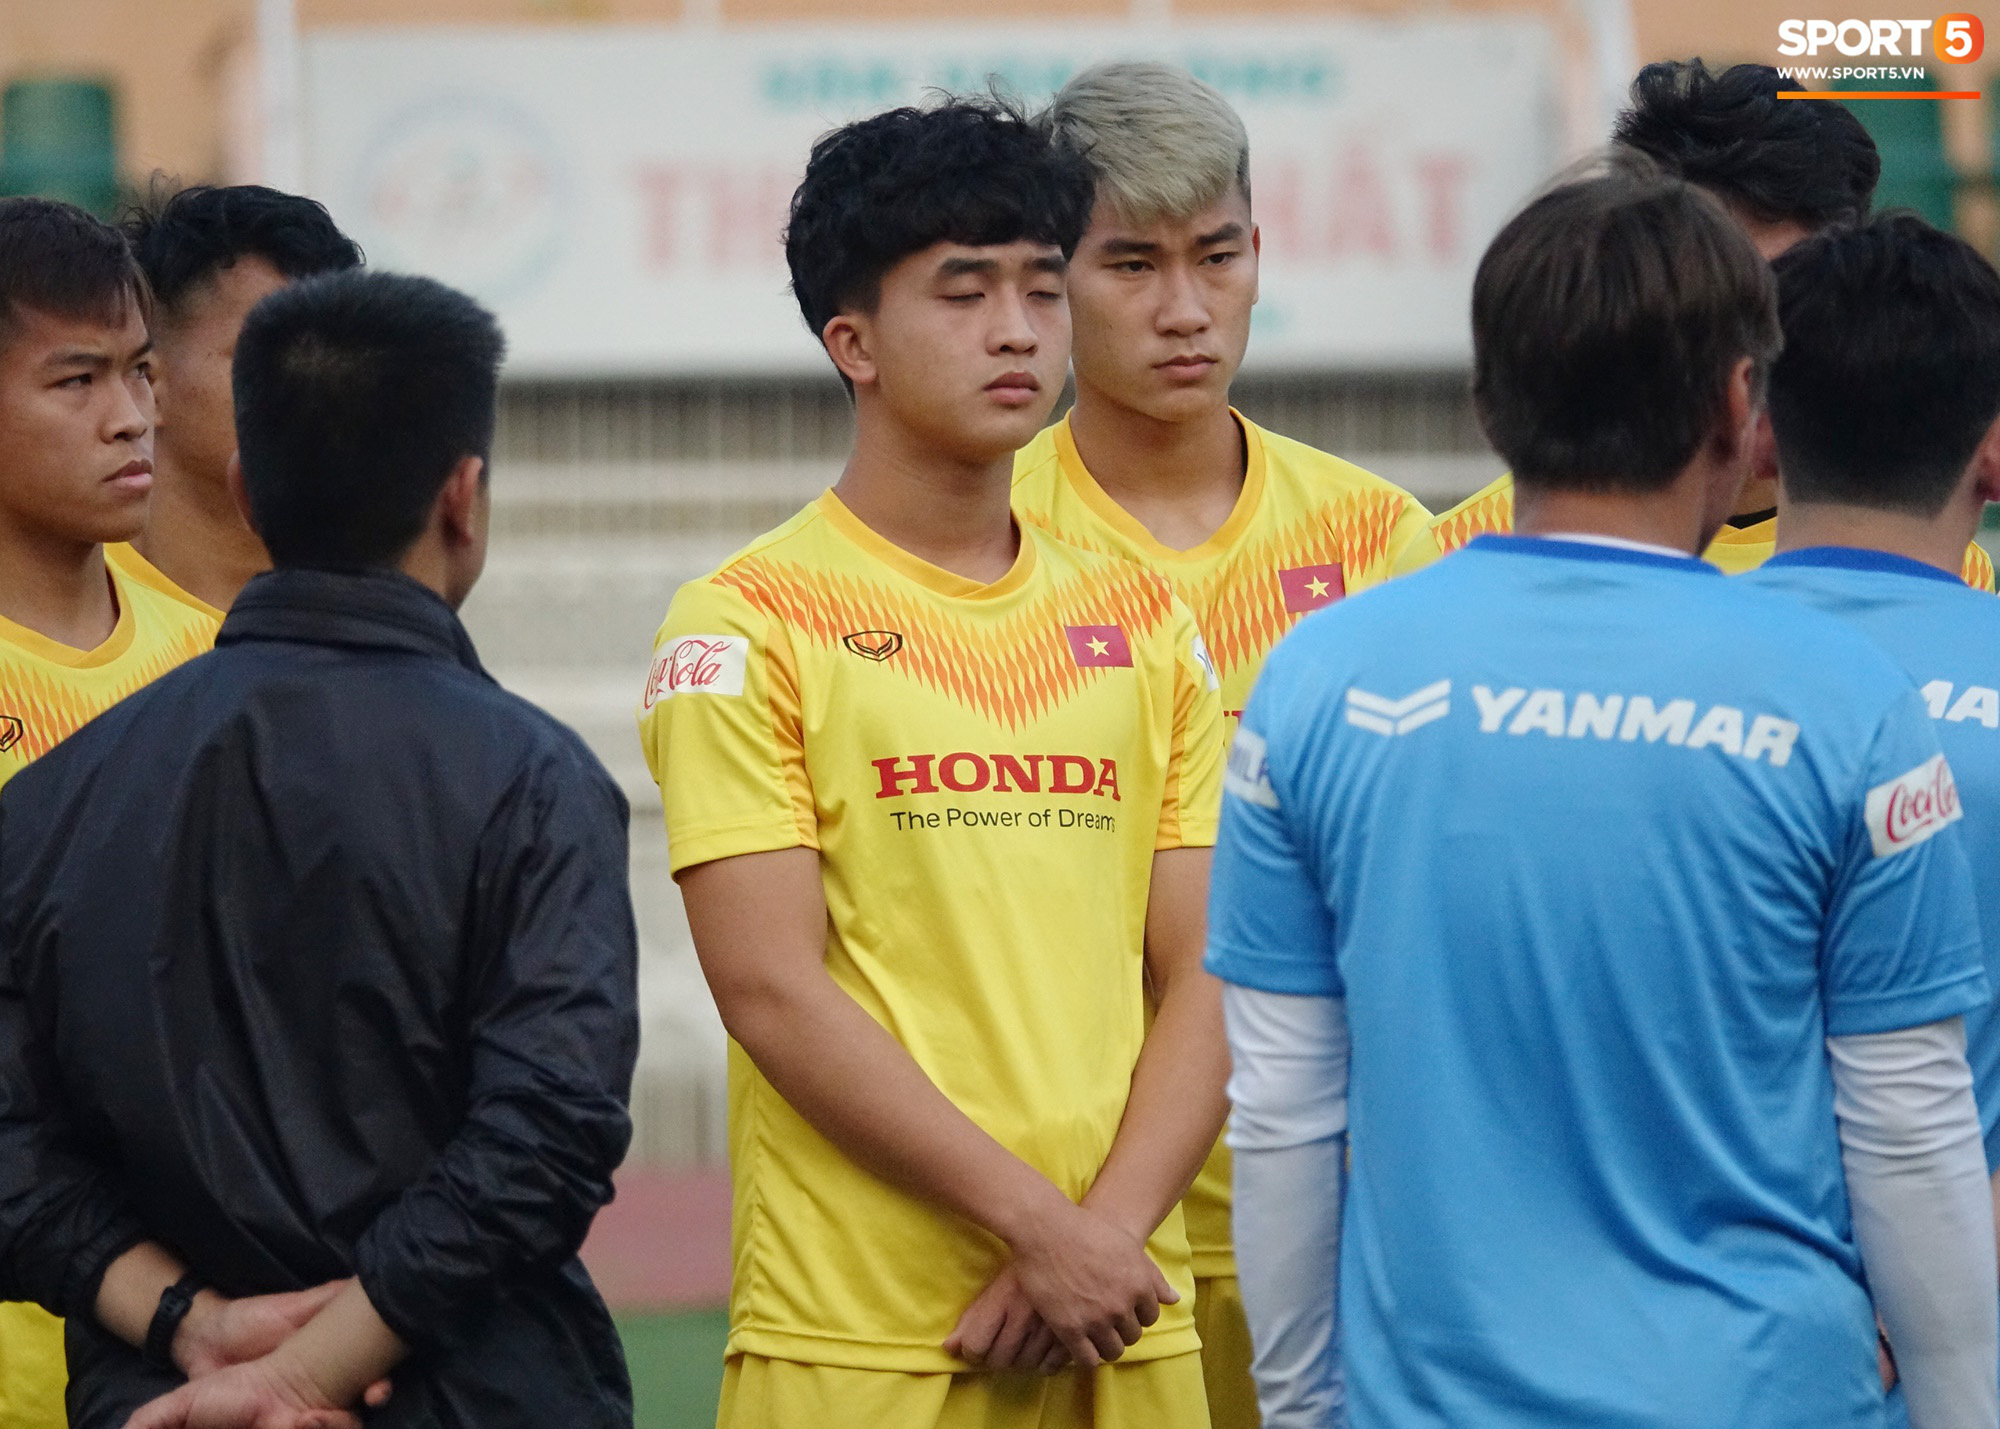 U23 Việt Nam có thêm thánh ngủ gật, Trọng Đại được thầy Park soi kỹ vì quả đầu màu khói - Ảnh 2.